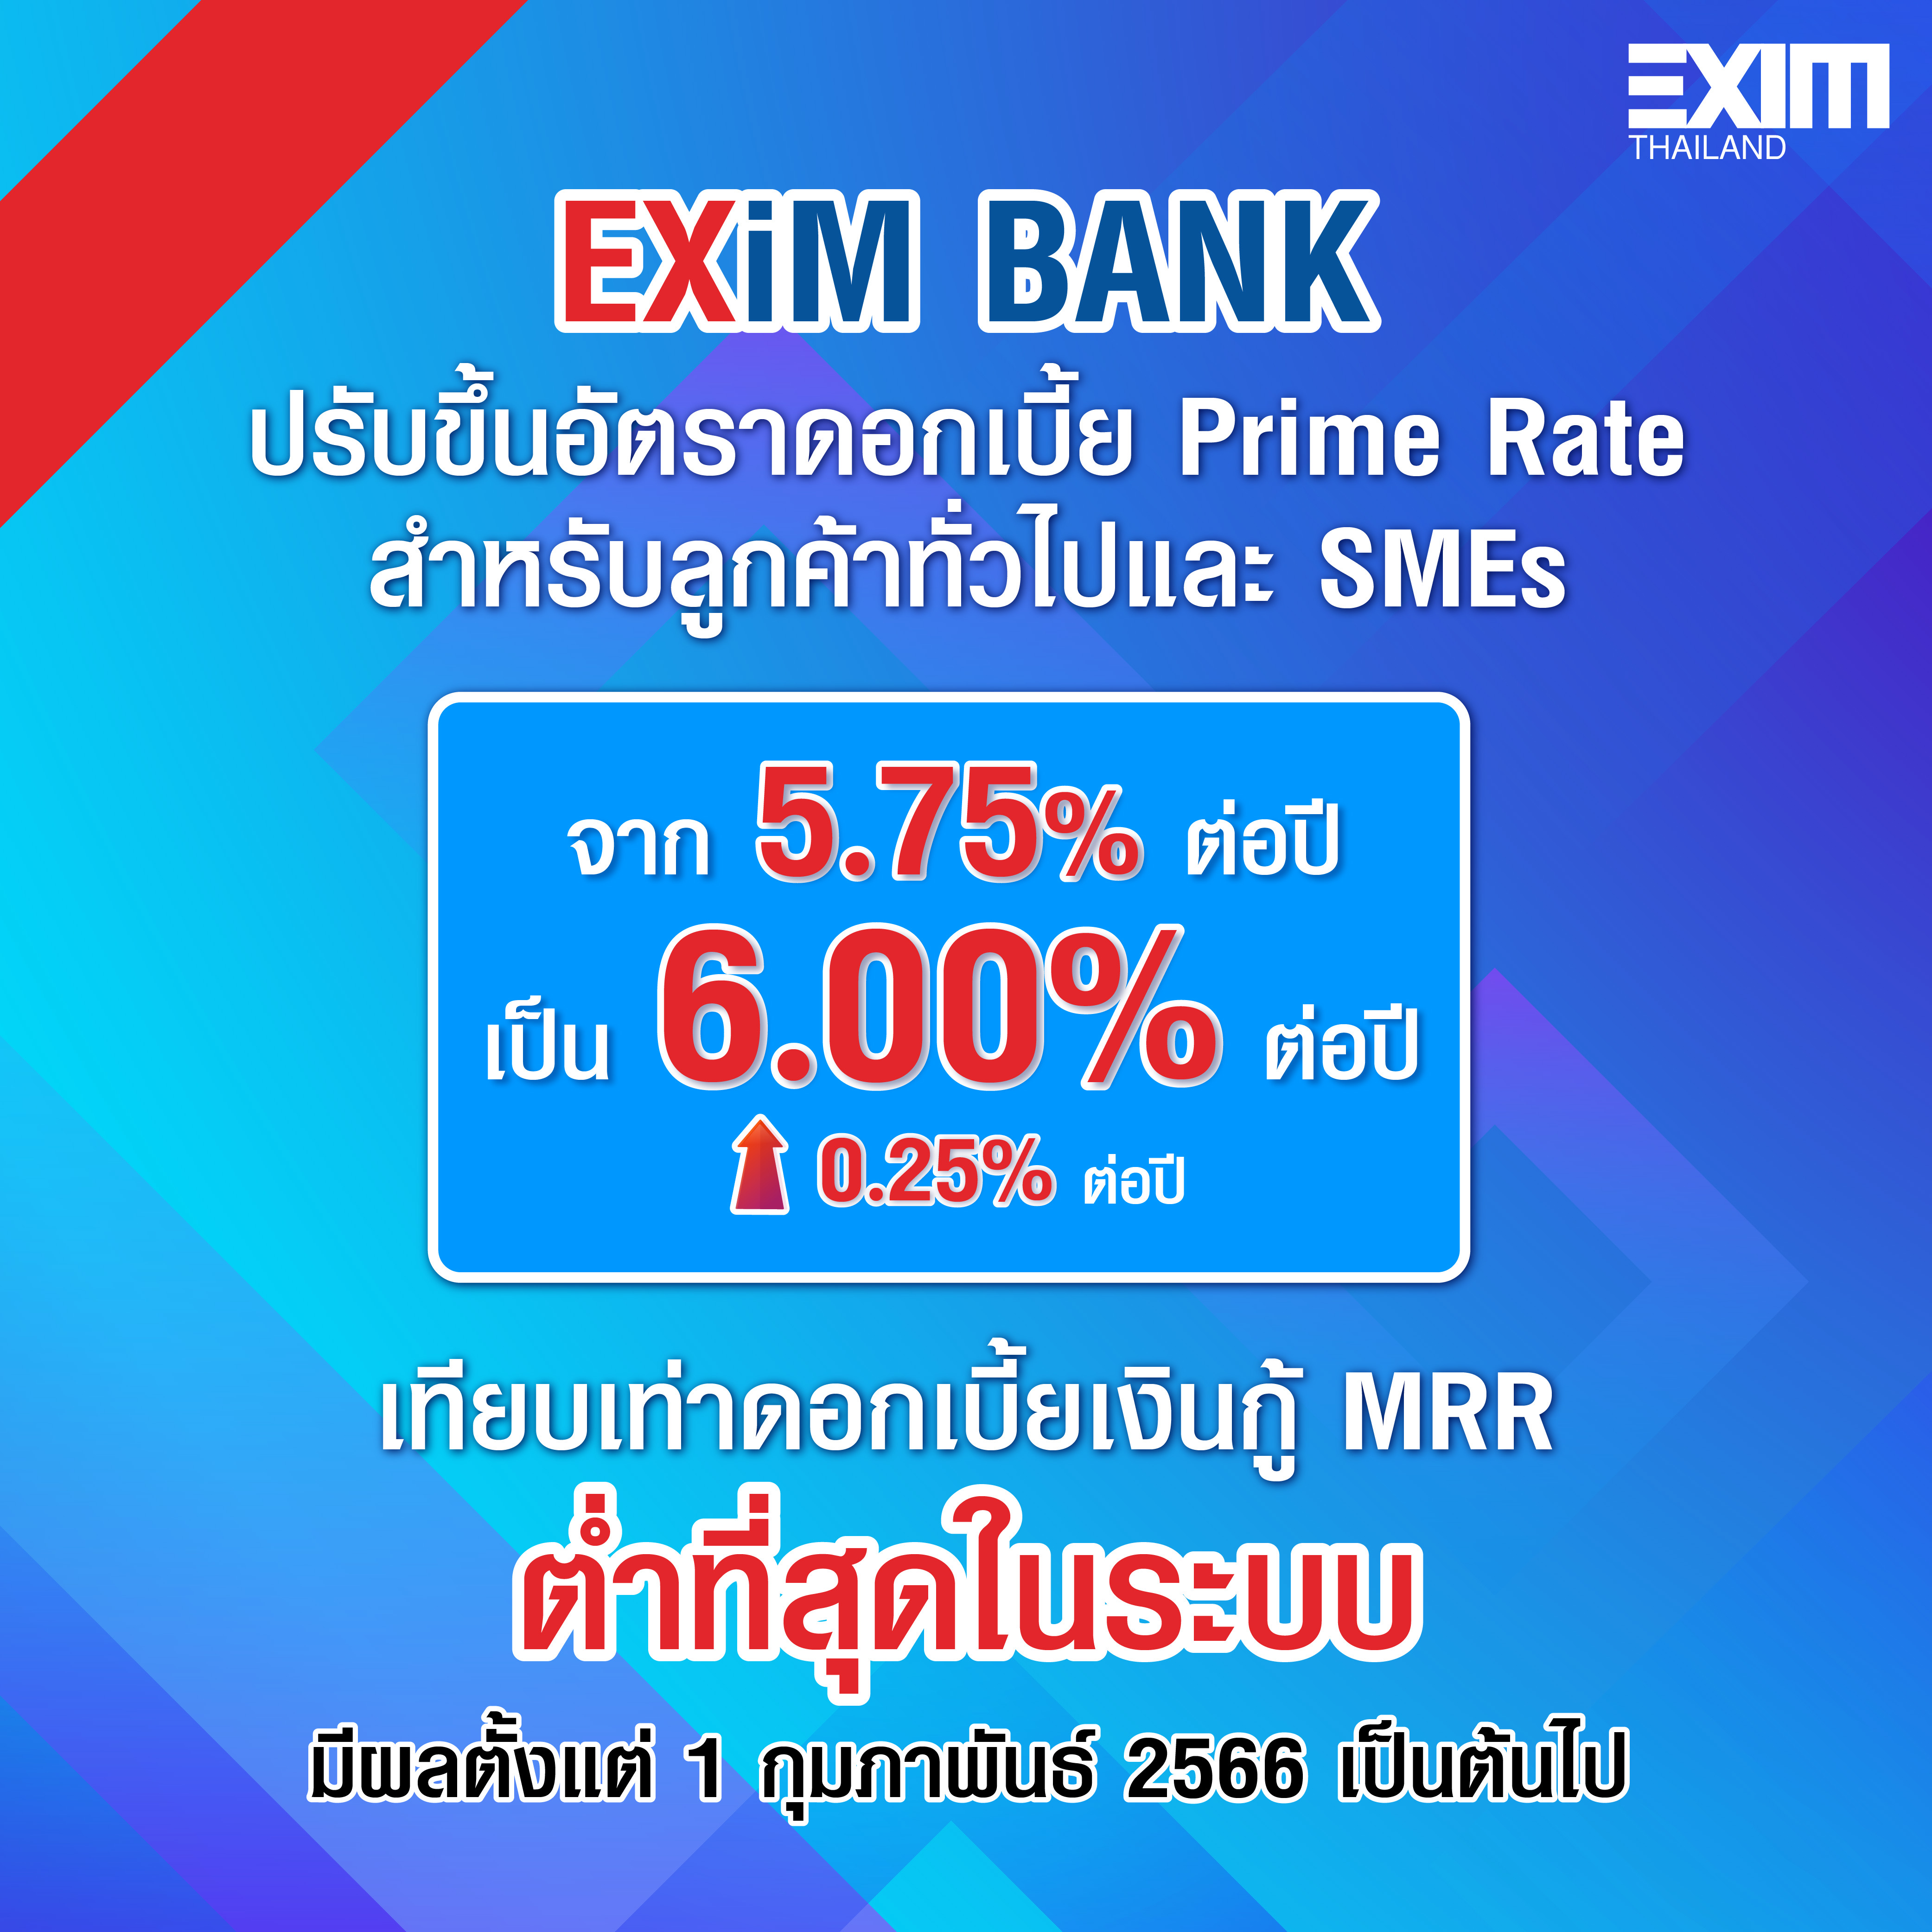 EXIM BANK ขึ้นอัตราดอกเบี้ยเงินกู้ 0.25% เริ่ม 1 ก.พ.นี้